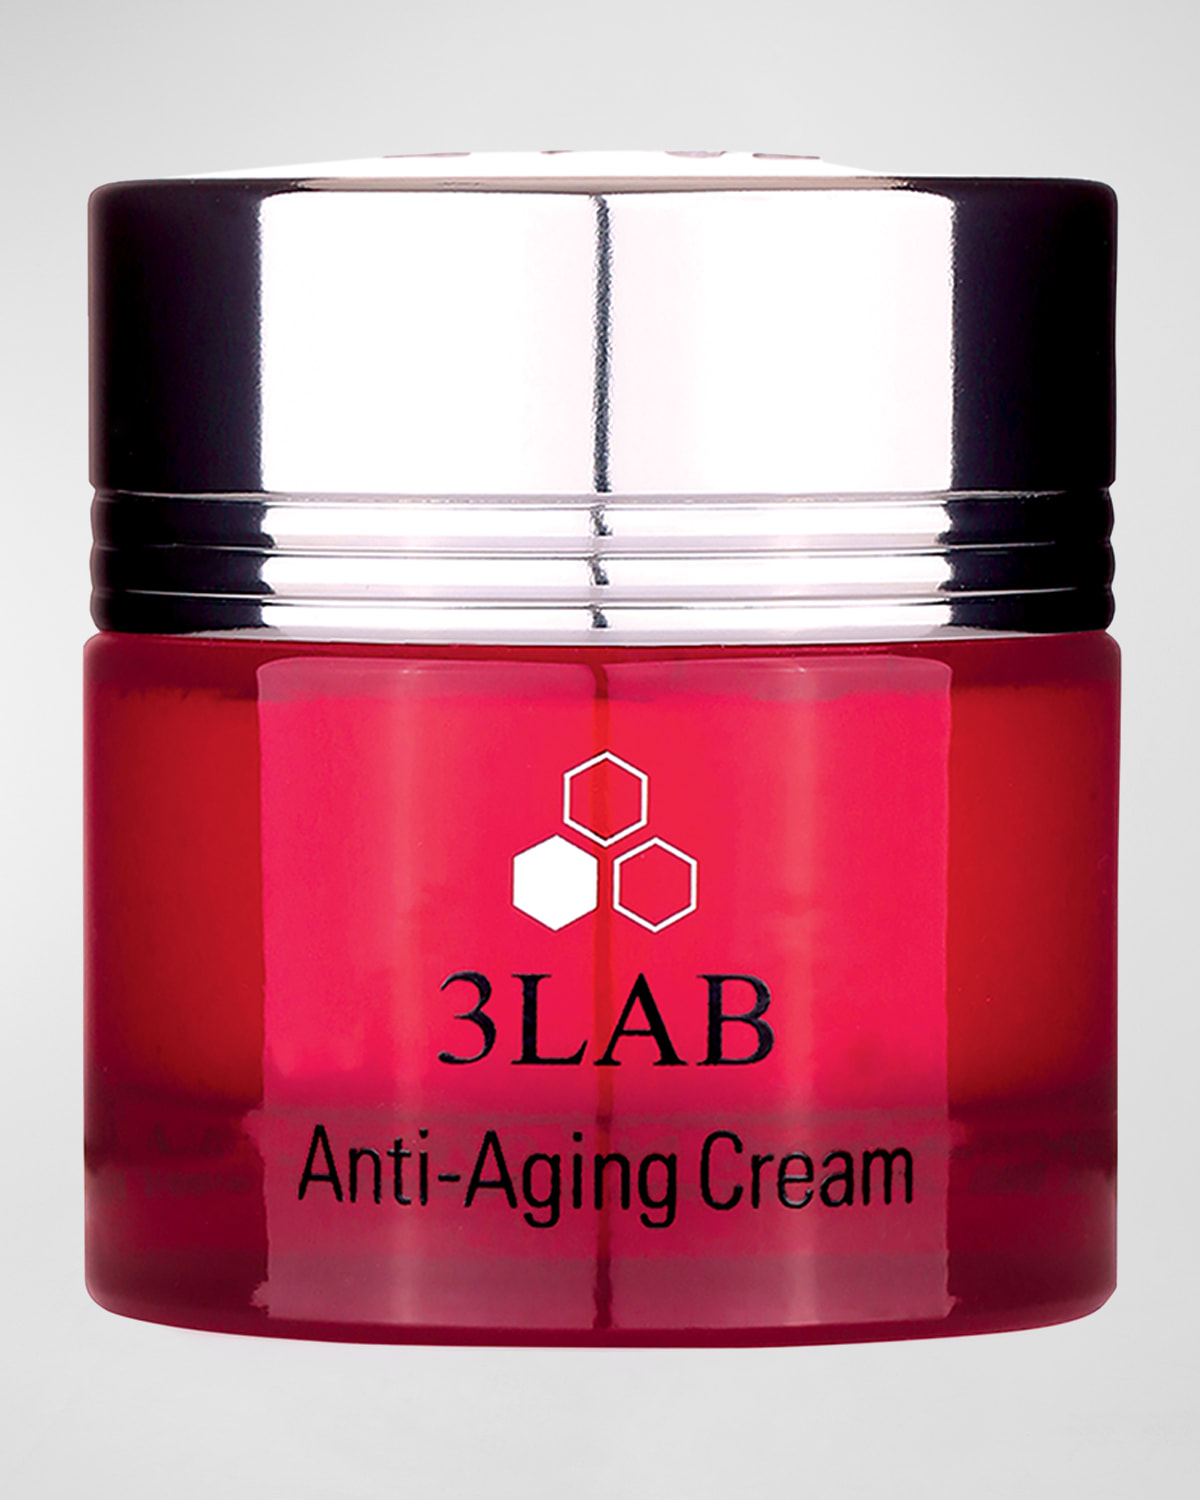 Anti-Aging Cream, 2 oz.